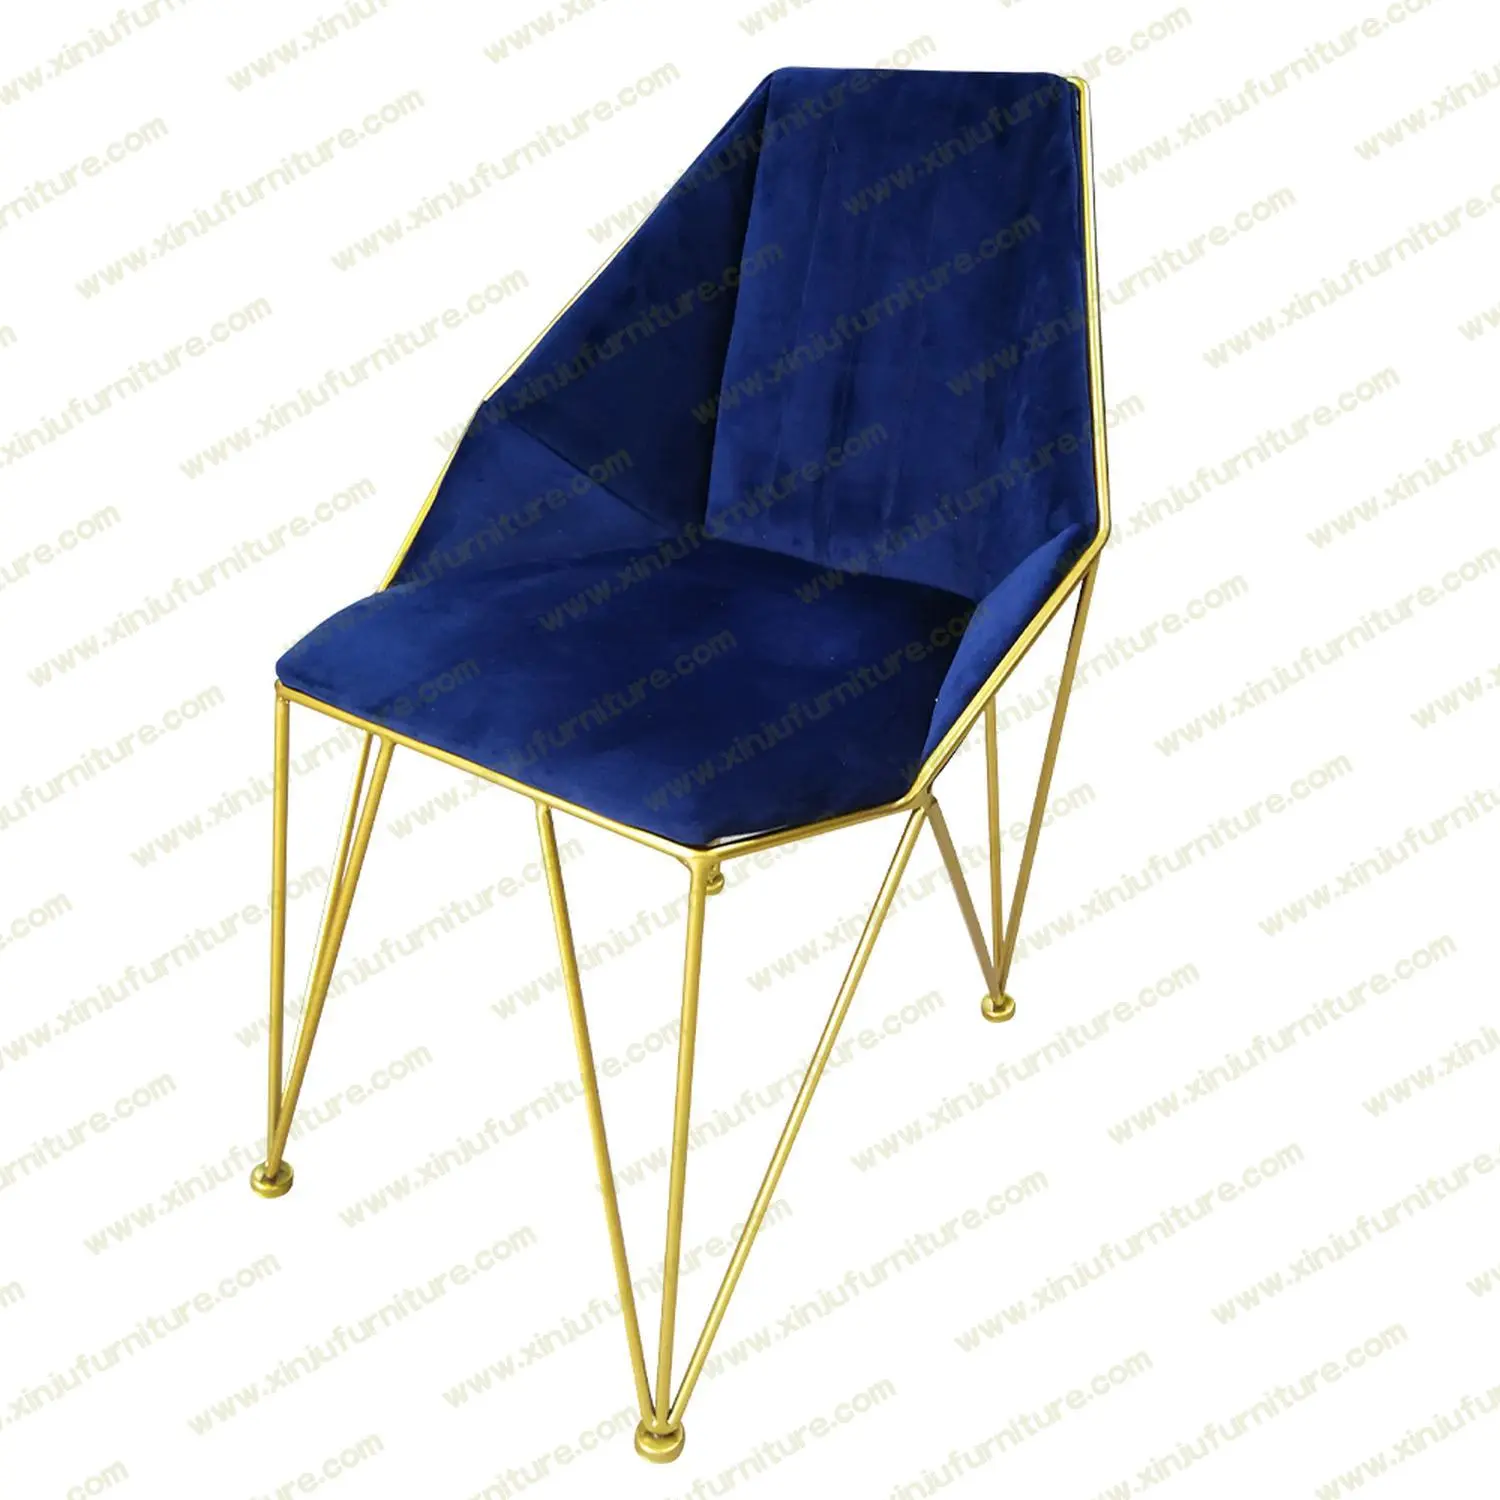 Modern design home leisure chair